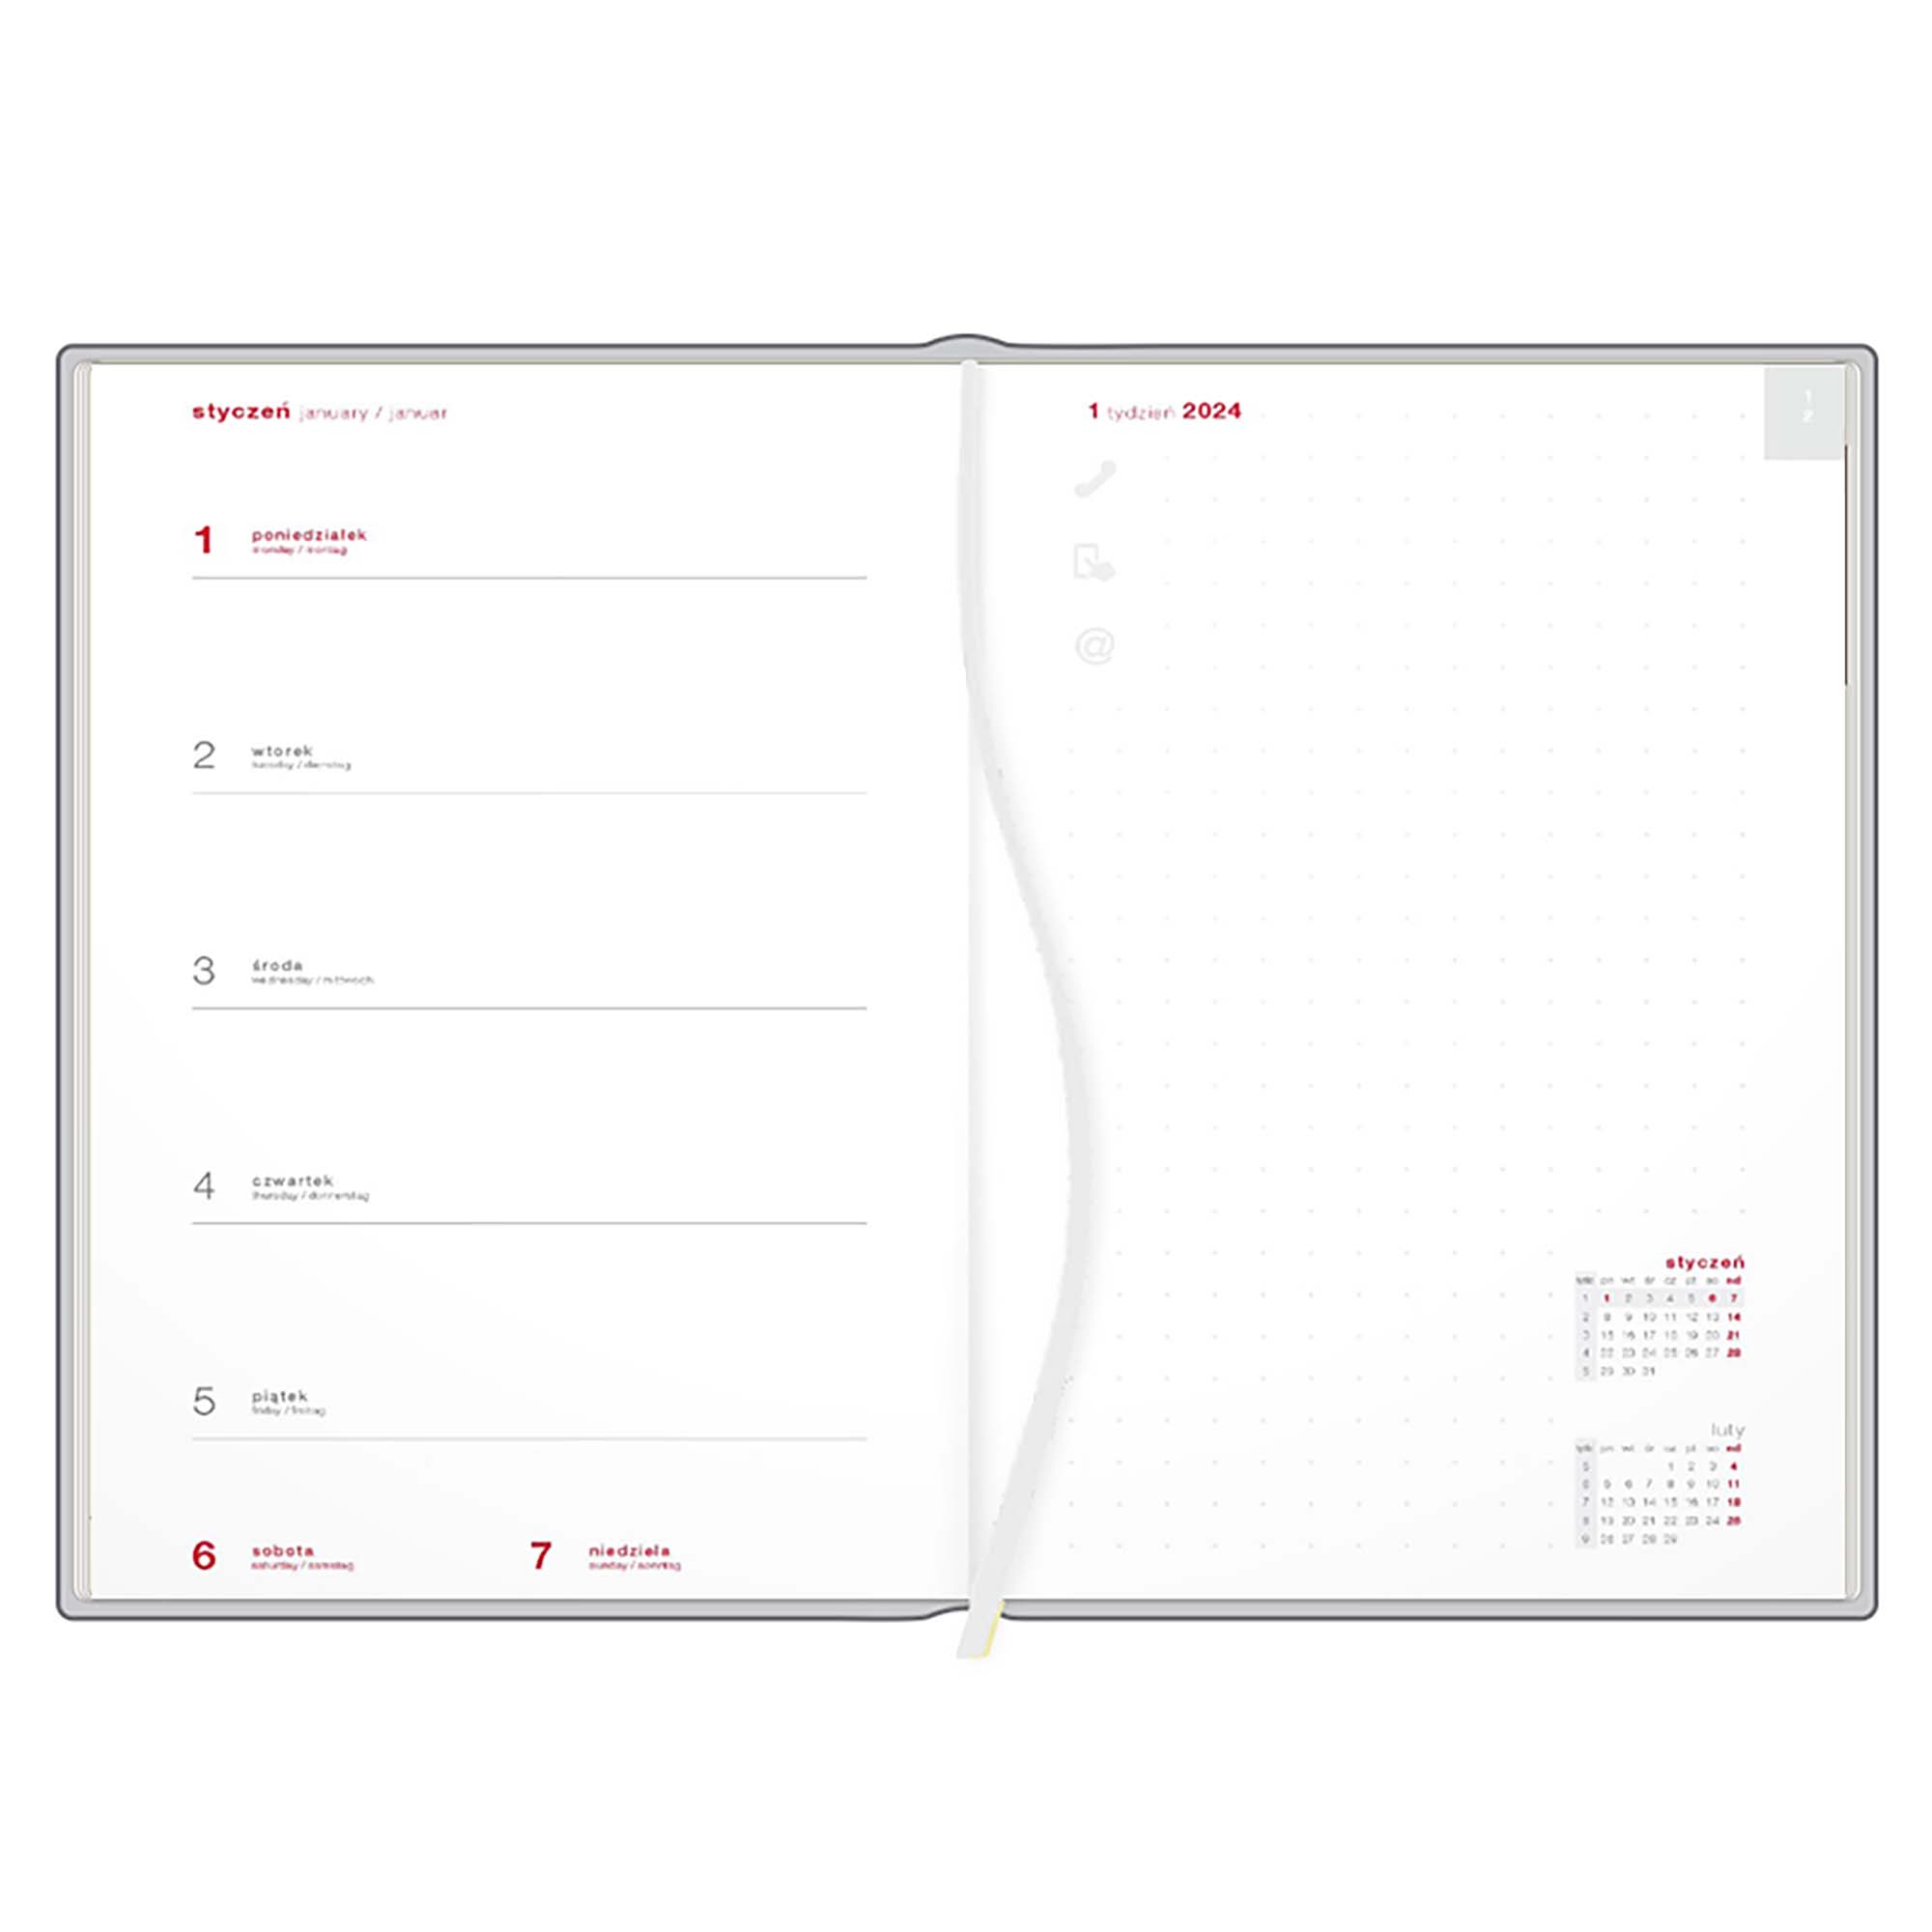 Kalendarz książkowy A5 tygodniowy z notesem, Victoria, srebrno-niebieski